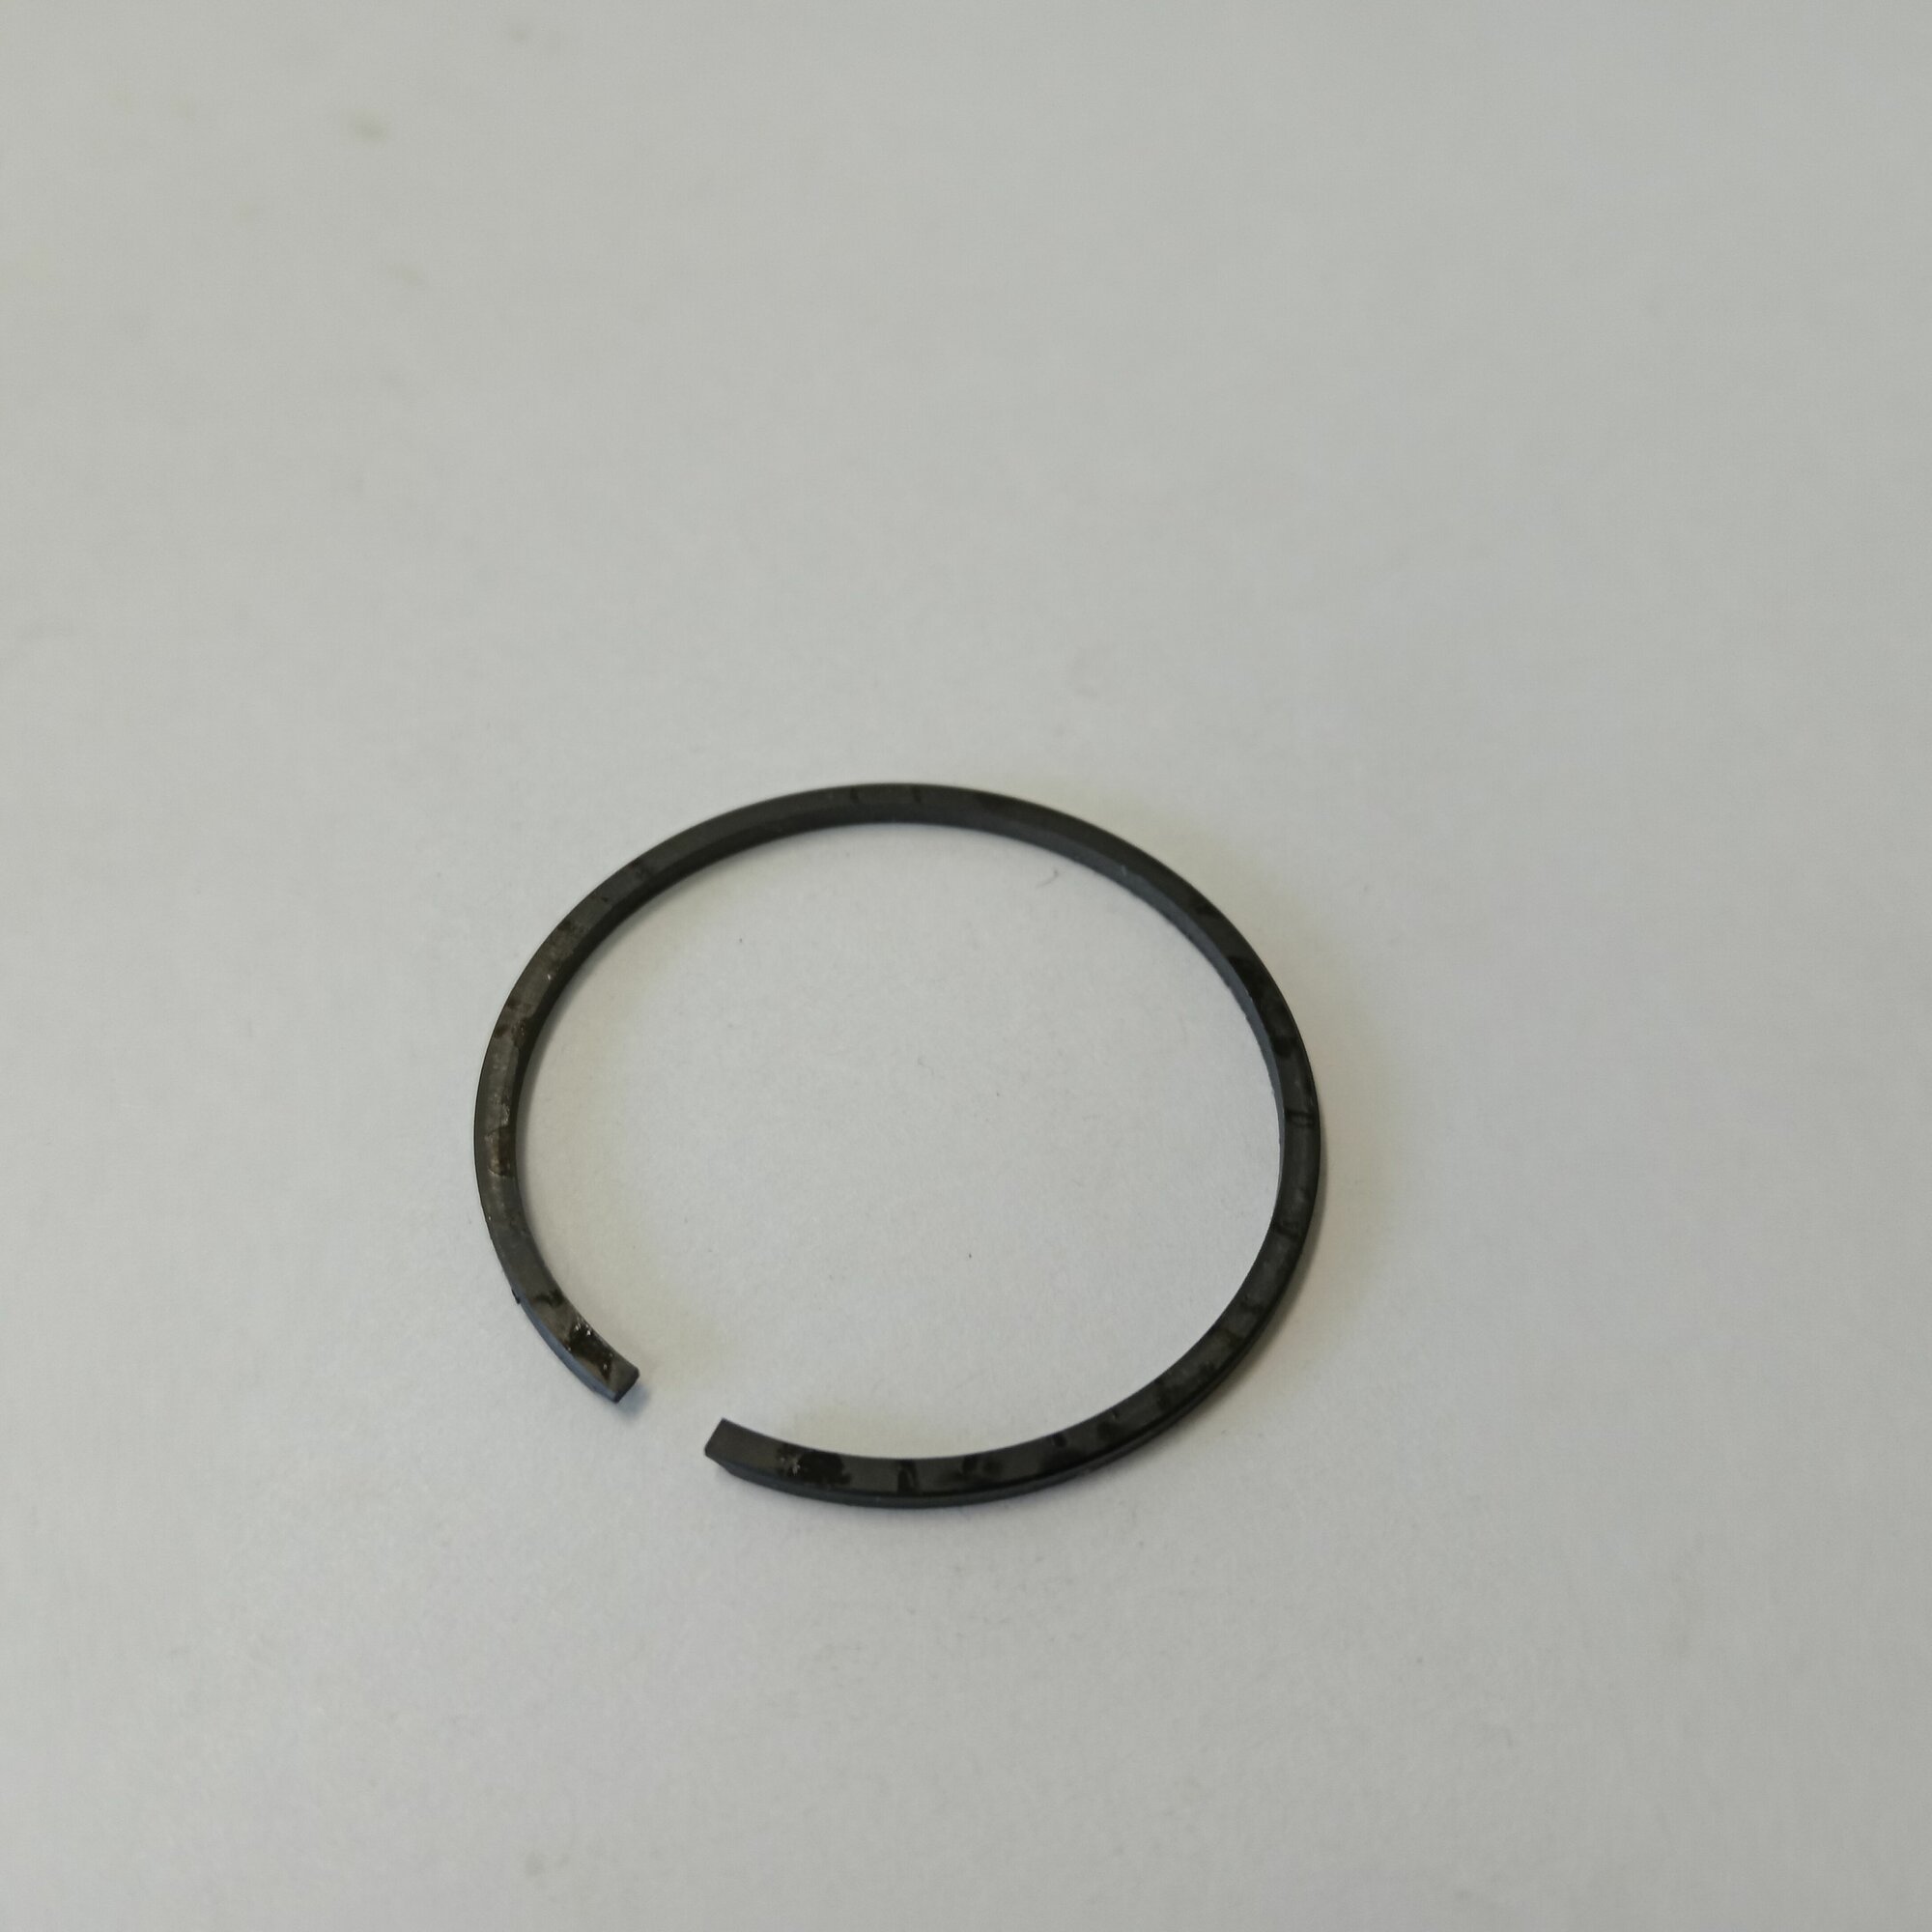 Кольцо компрессионное для бензокос Hus 125, 128 R(35x1.2)